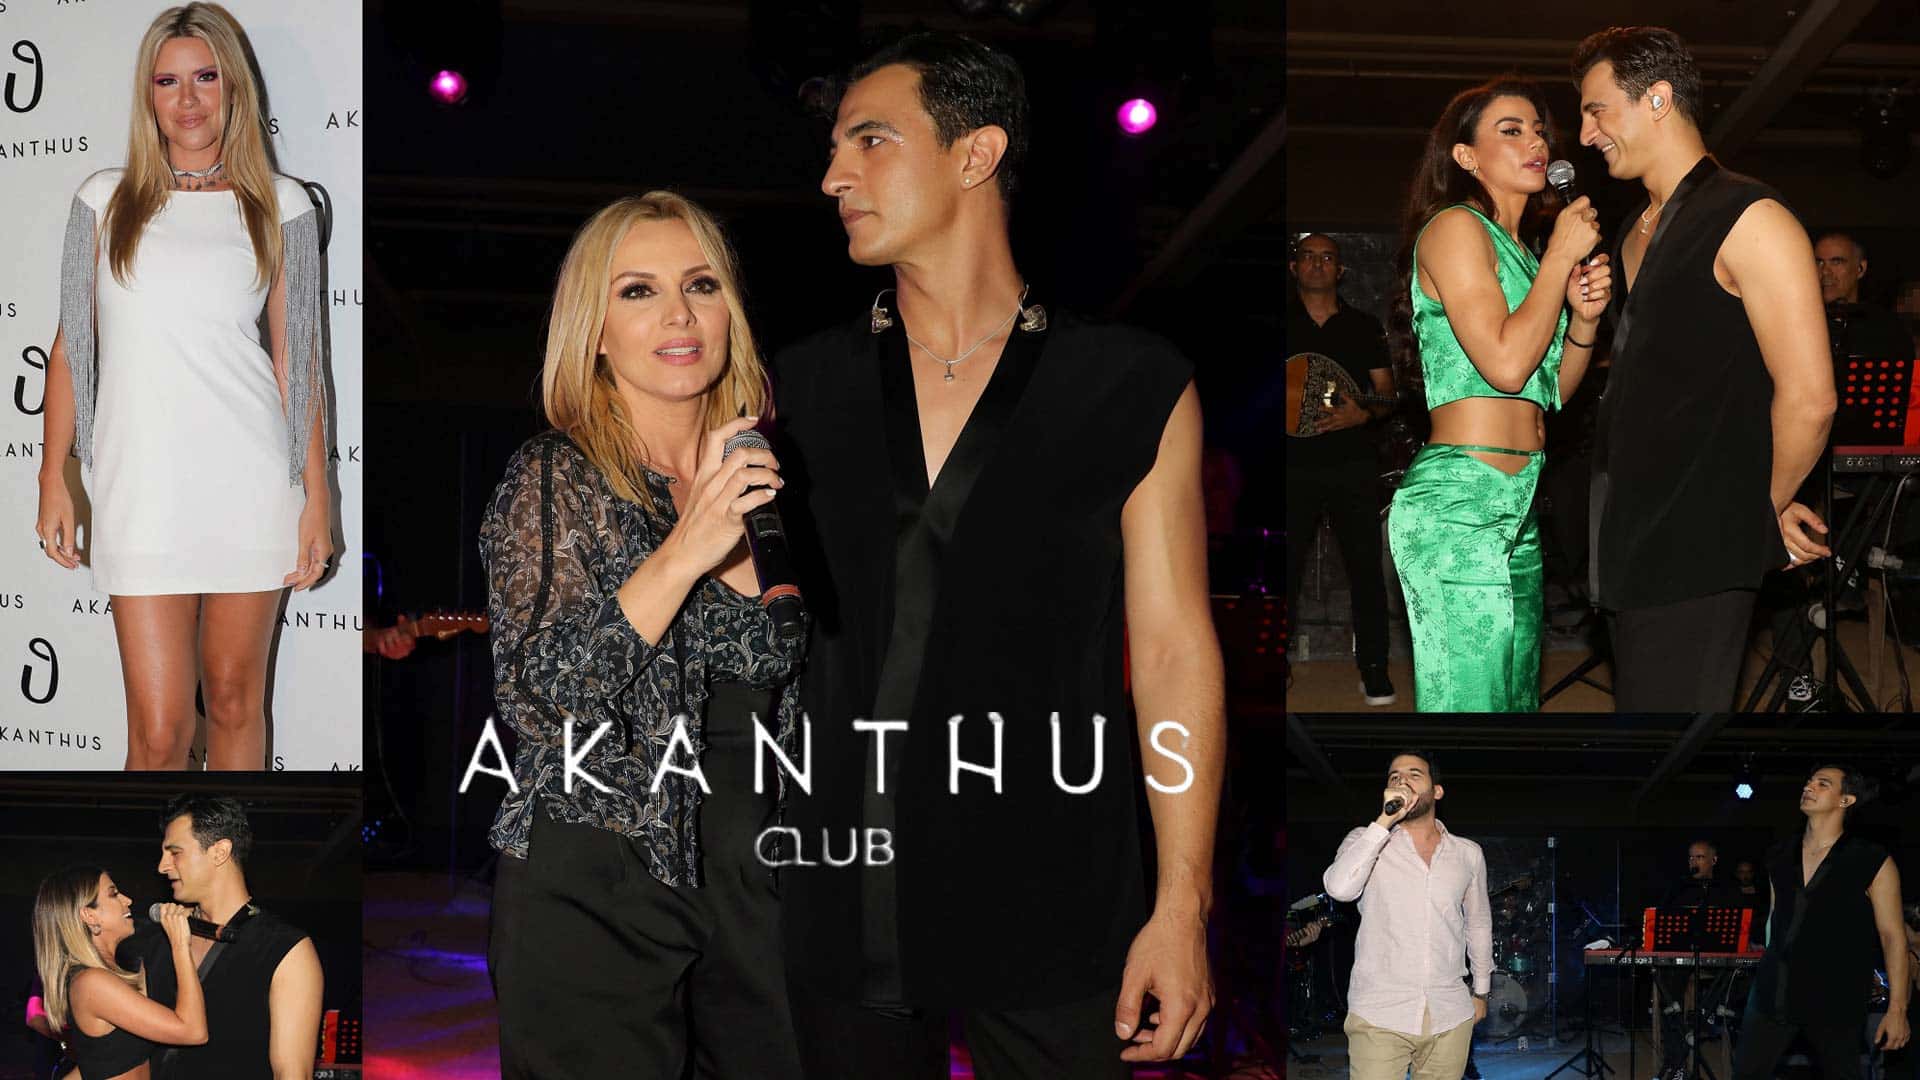 Δήμος Αναστασιάδης: Εντυπωσιακή πρεμιέρα στο Akanthus Club στην Παραλιακή